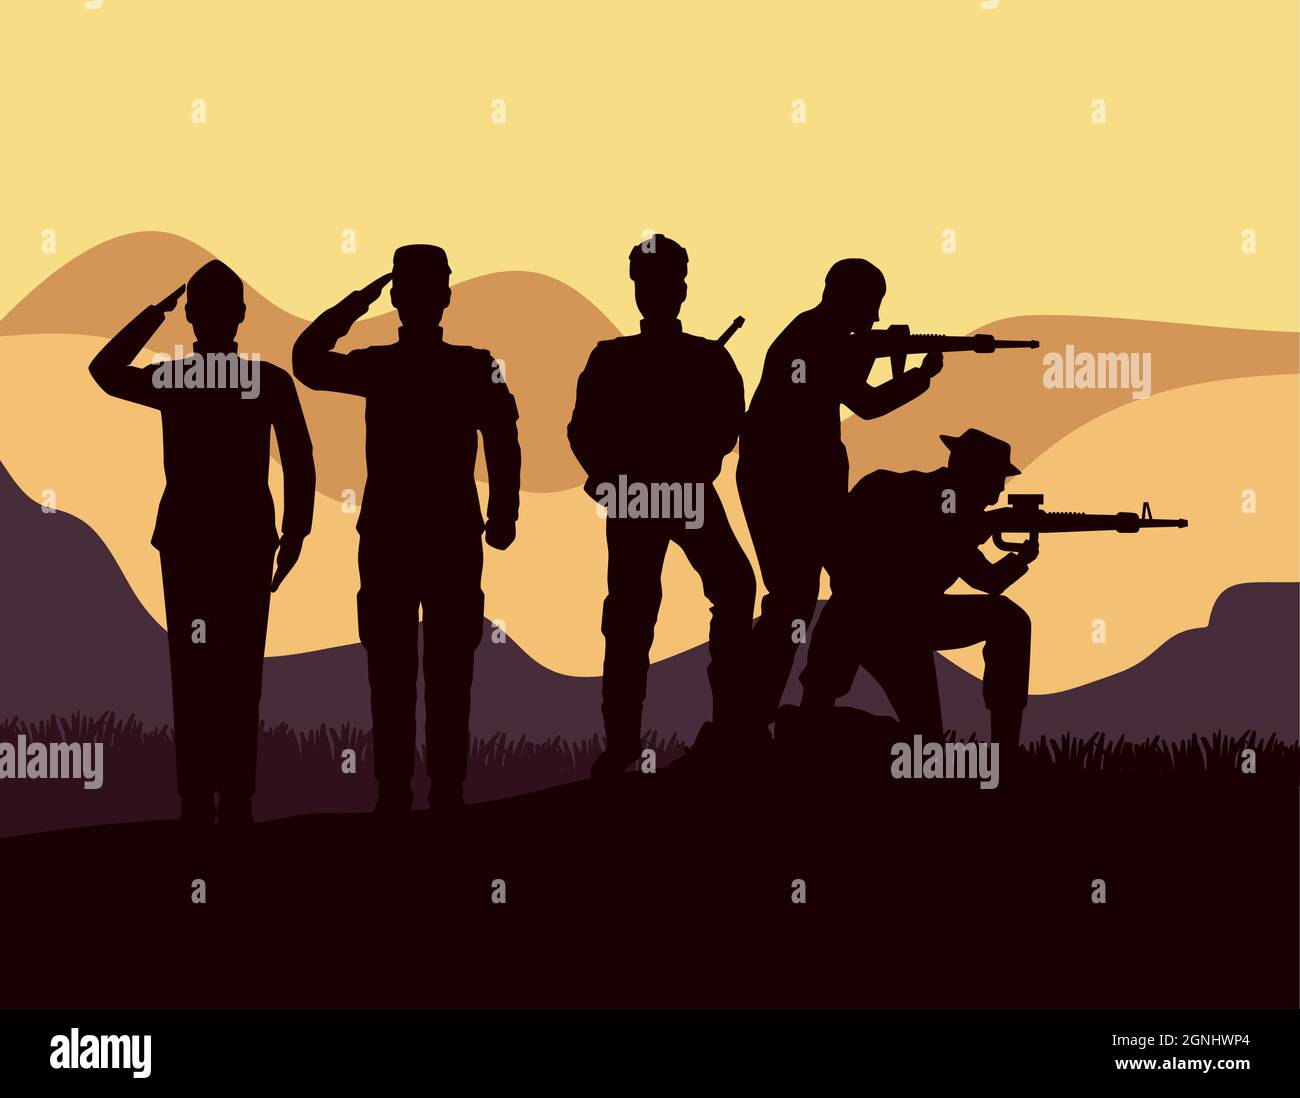 cinque silhouette militari nel campo Illustrazione Vettoriale